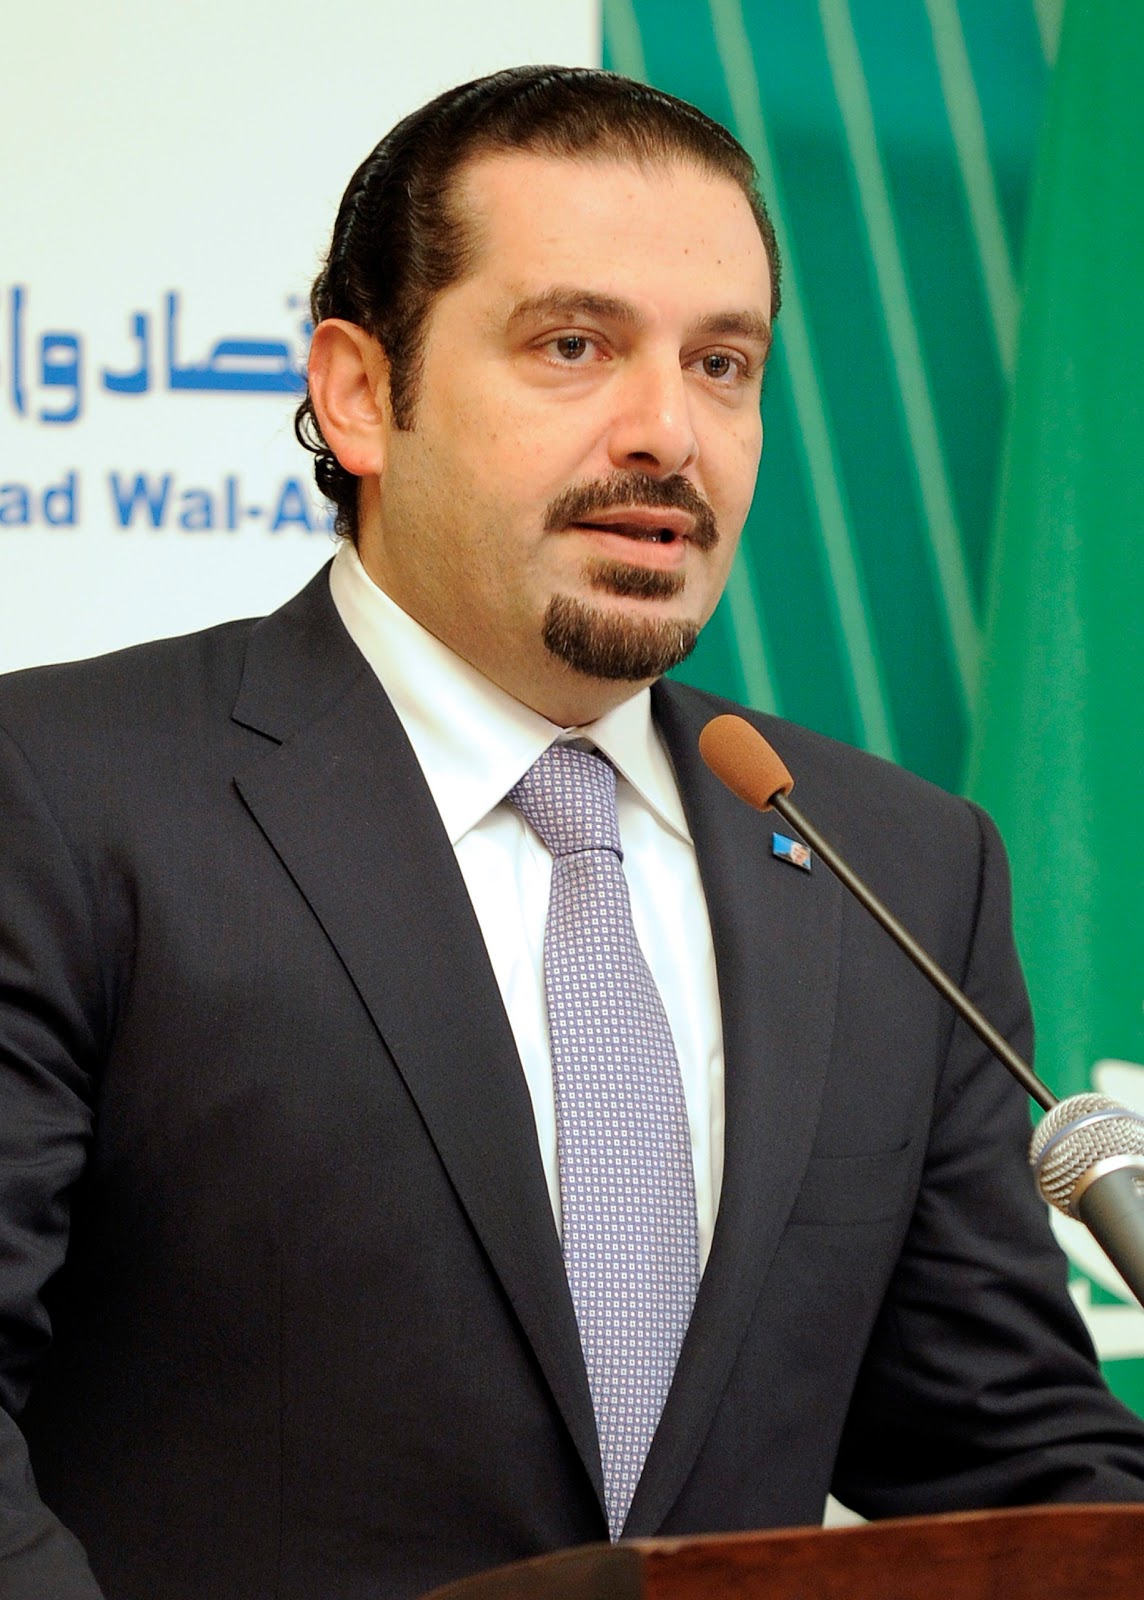 Saad Hariri Net Worth